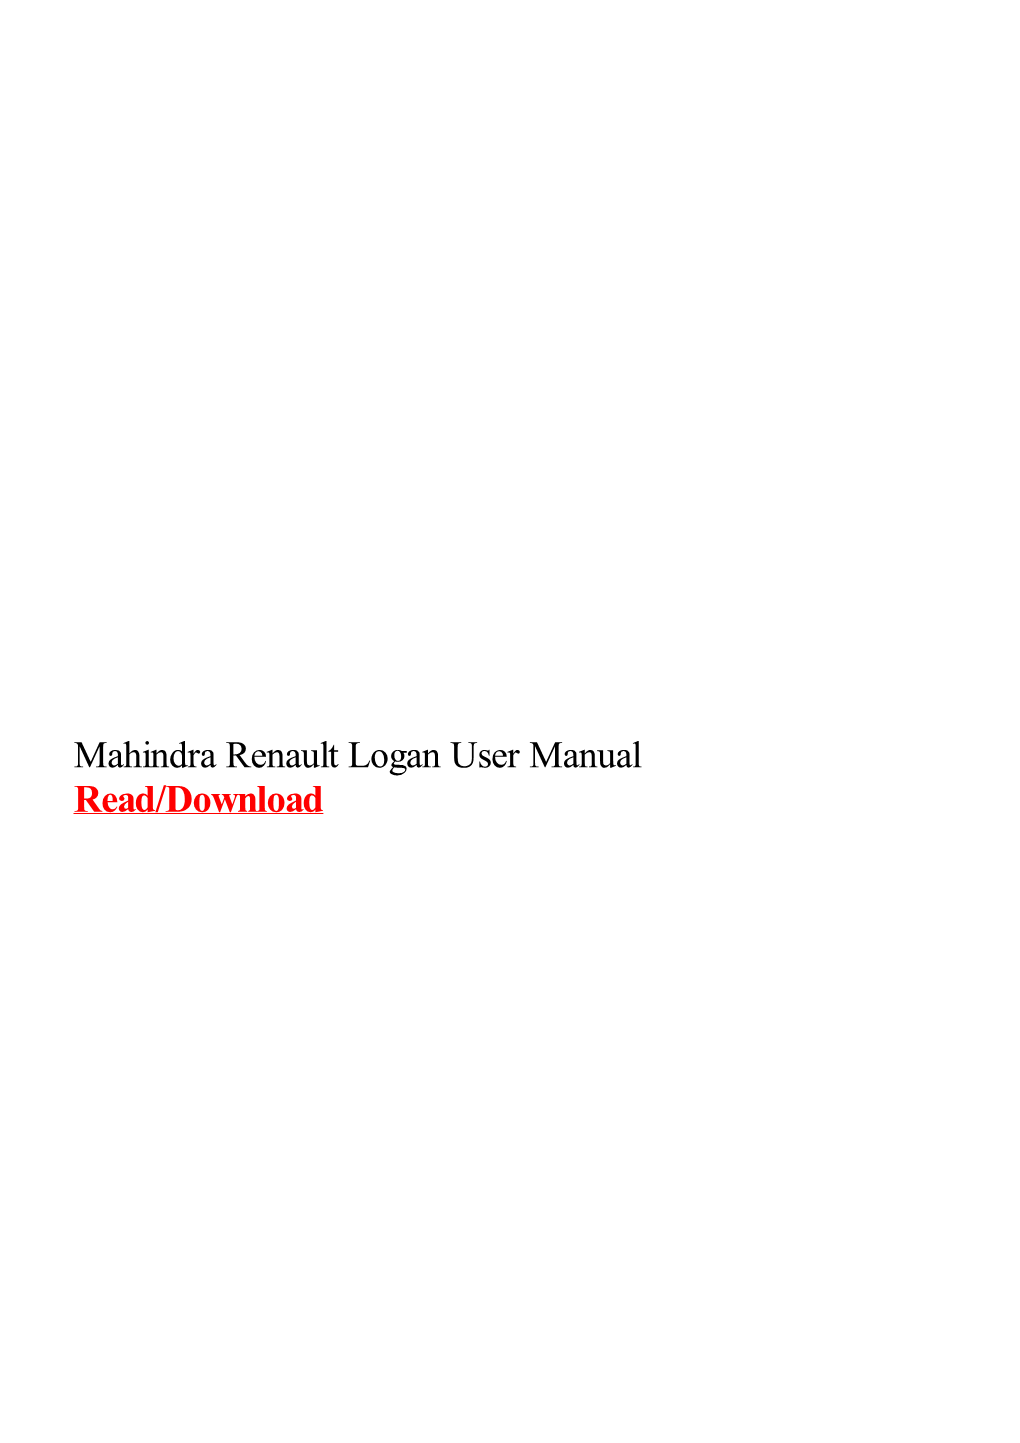 Mahindra Renault Logan User Manual.Pdf